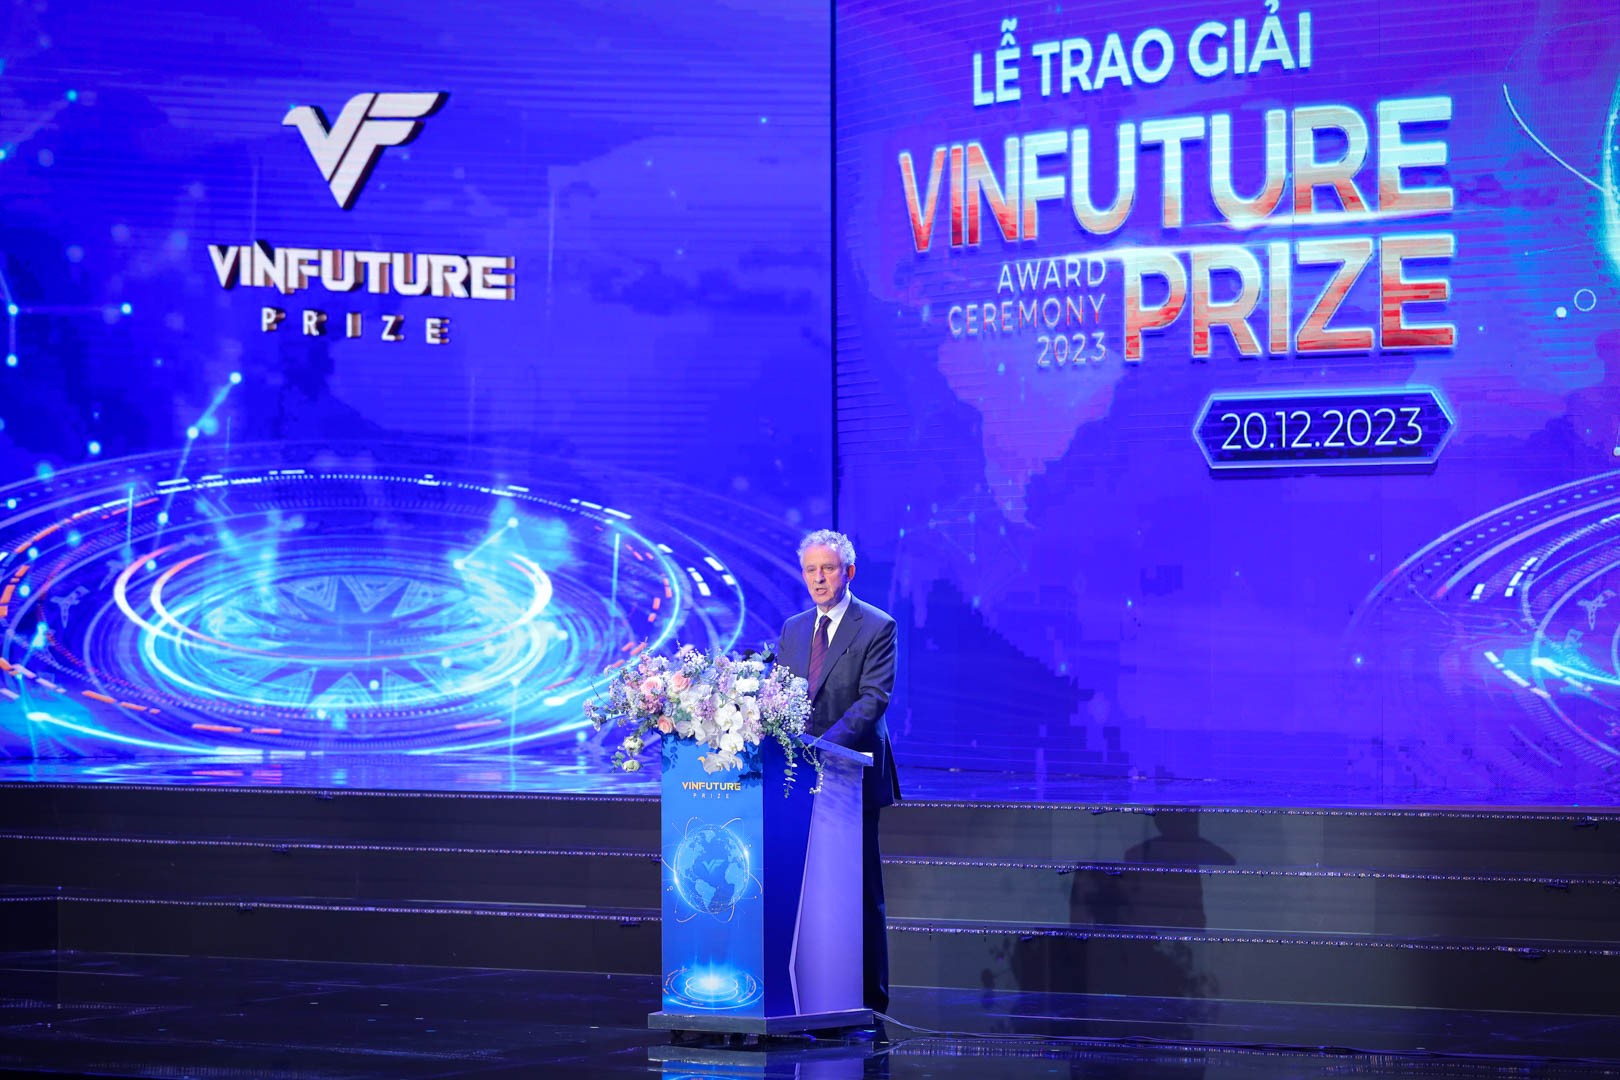 Giáo sư Richard Henry Friend, Đại học Cambridge (Vương quốc Anh), Chủ tịch Hội đồng Giải thưởng VinFuture, thay mặt Ban Tổ chức phát biểu khai mạc Lễ trao giải VinFuture 2023